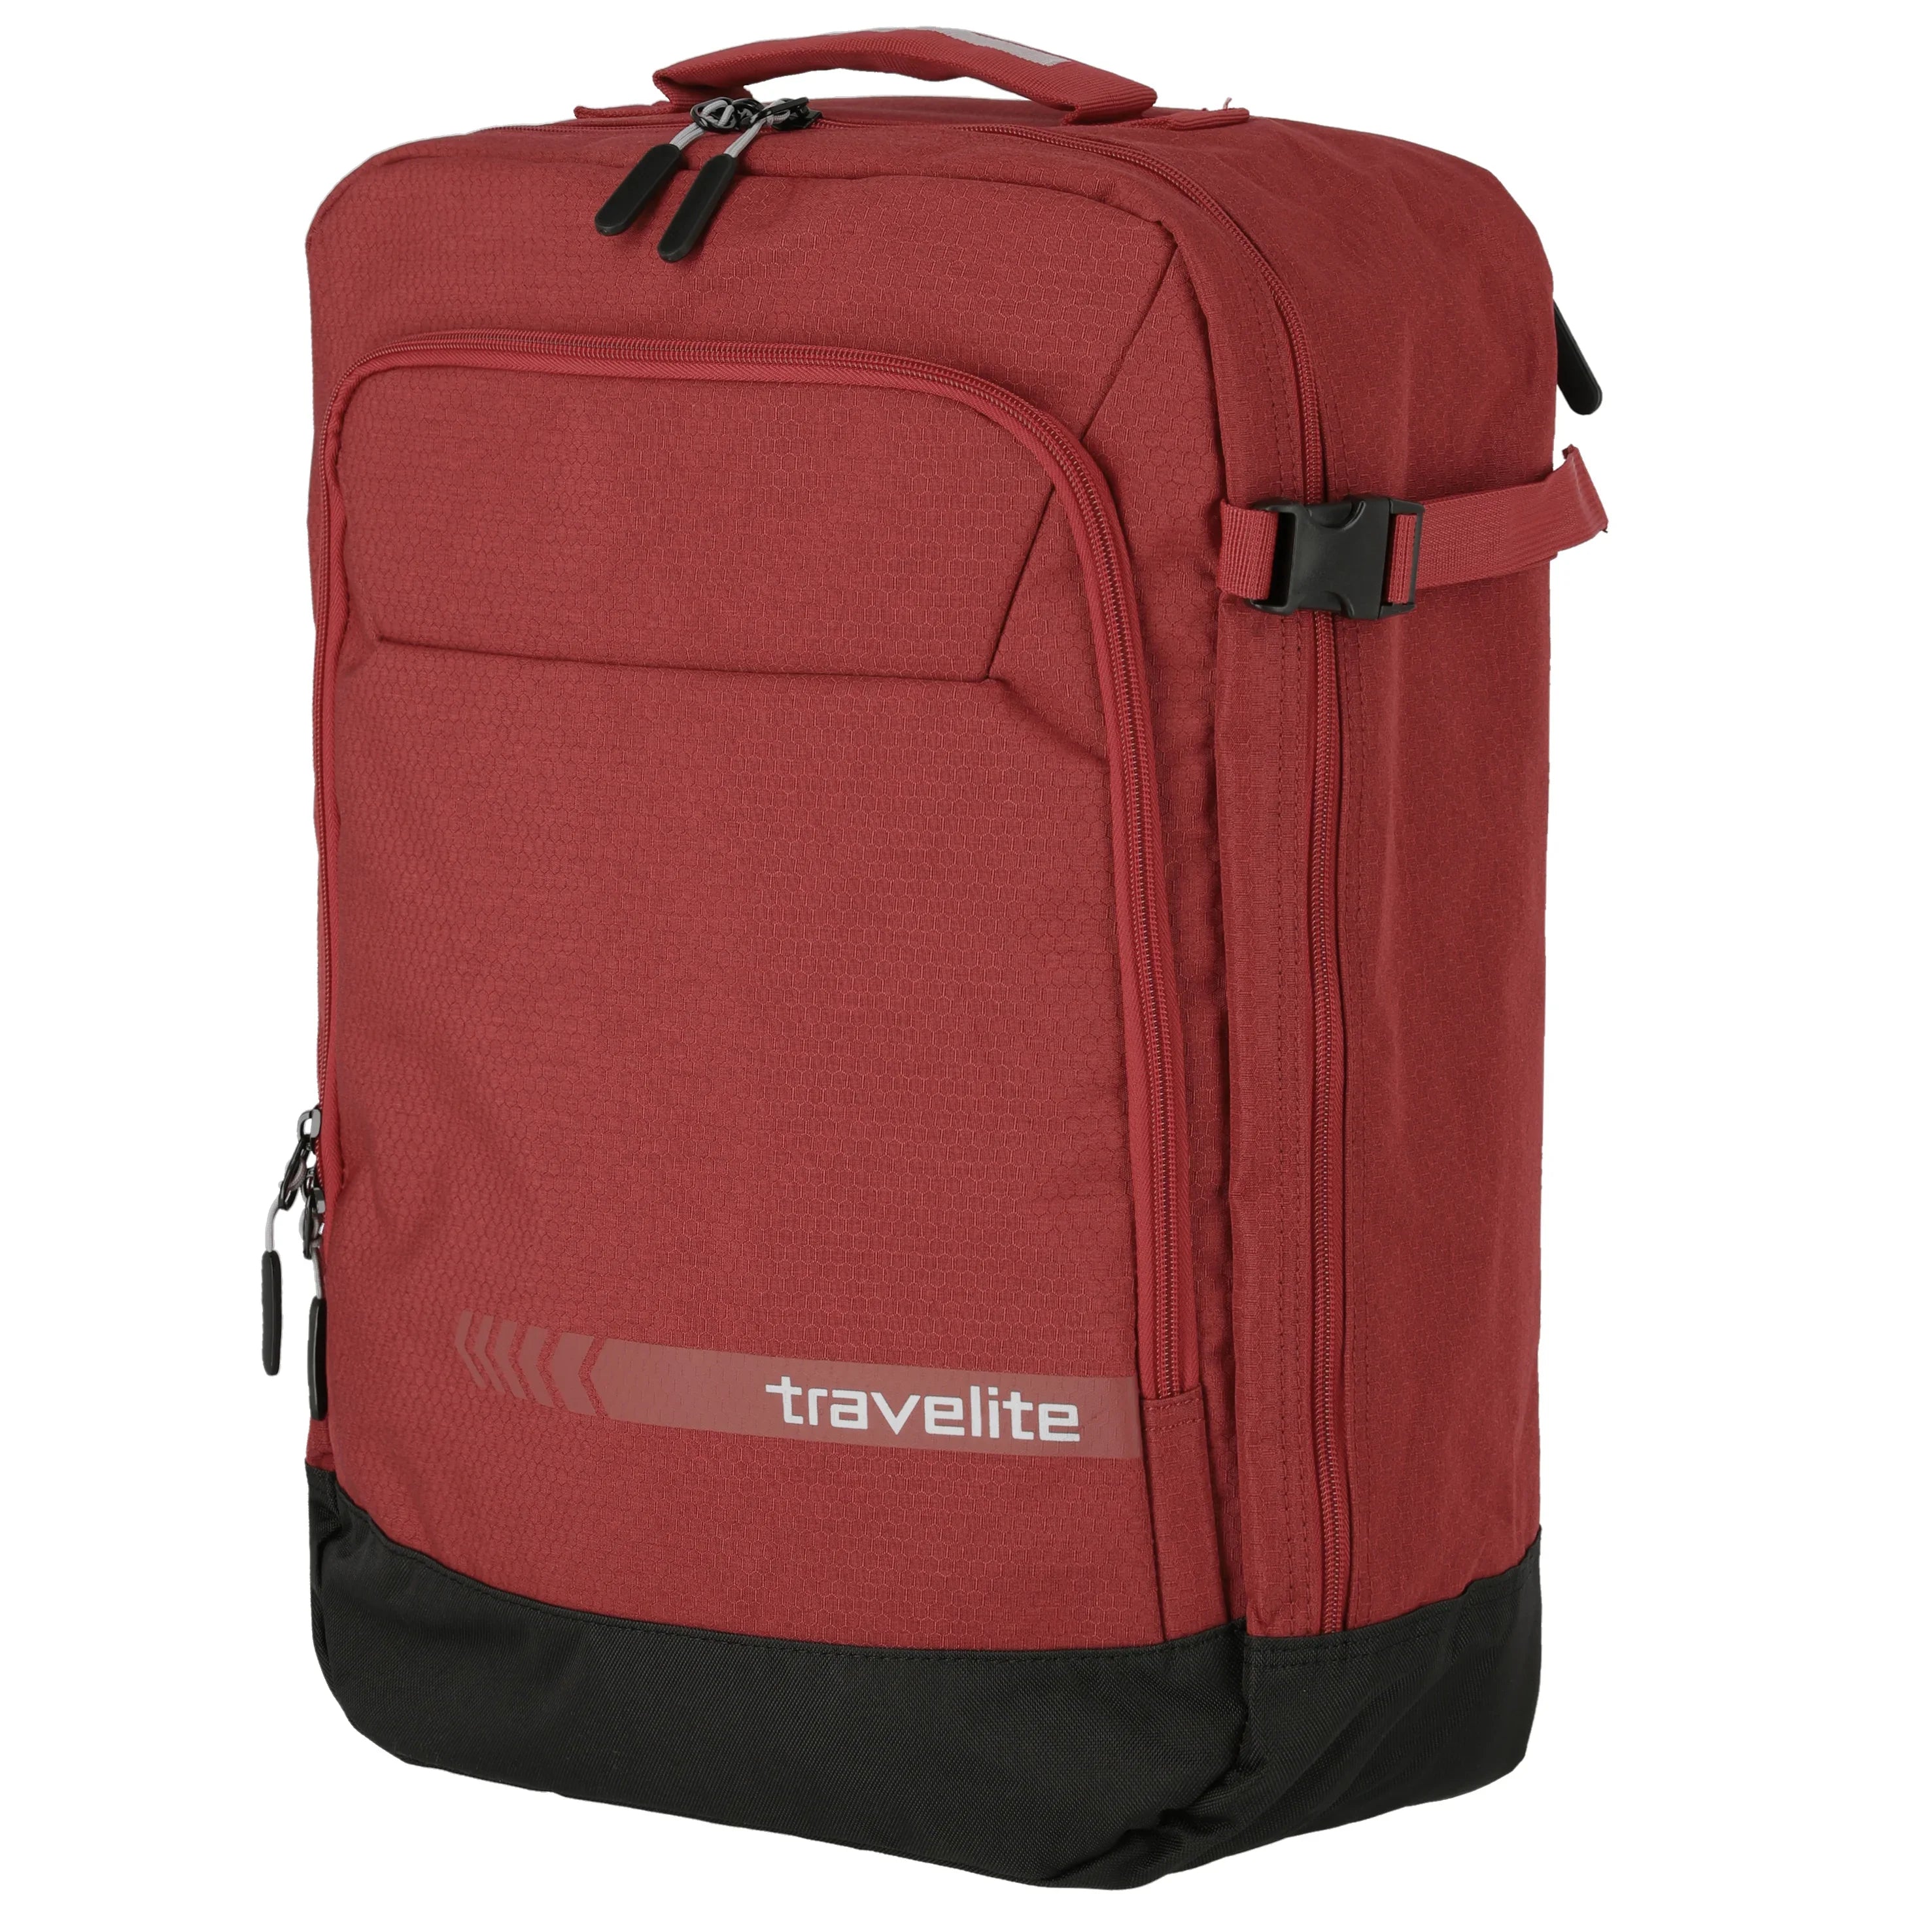 Travelite Kick Off backpack bag 50 cm - red